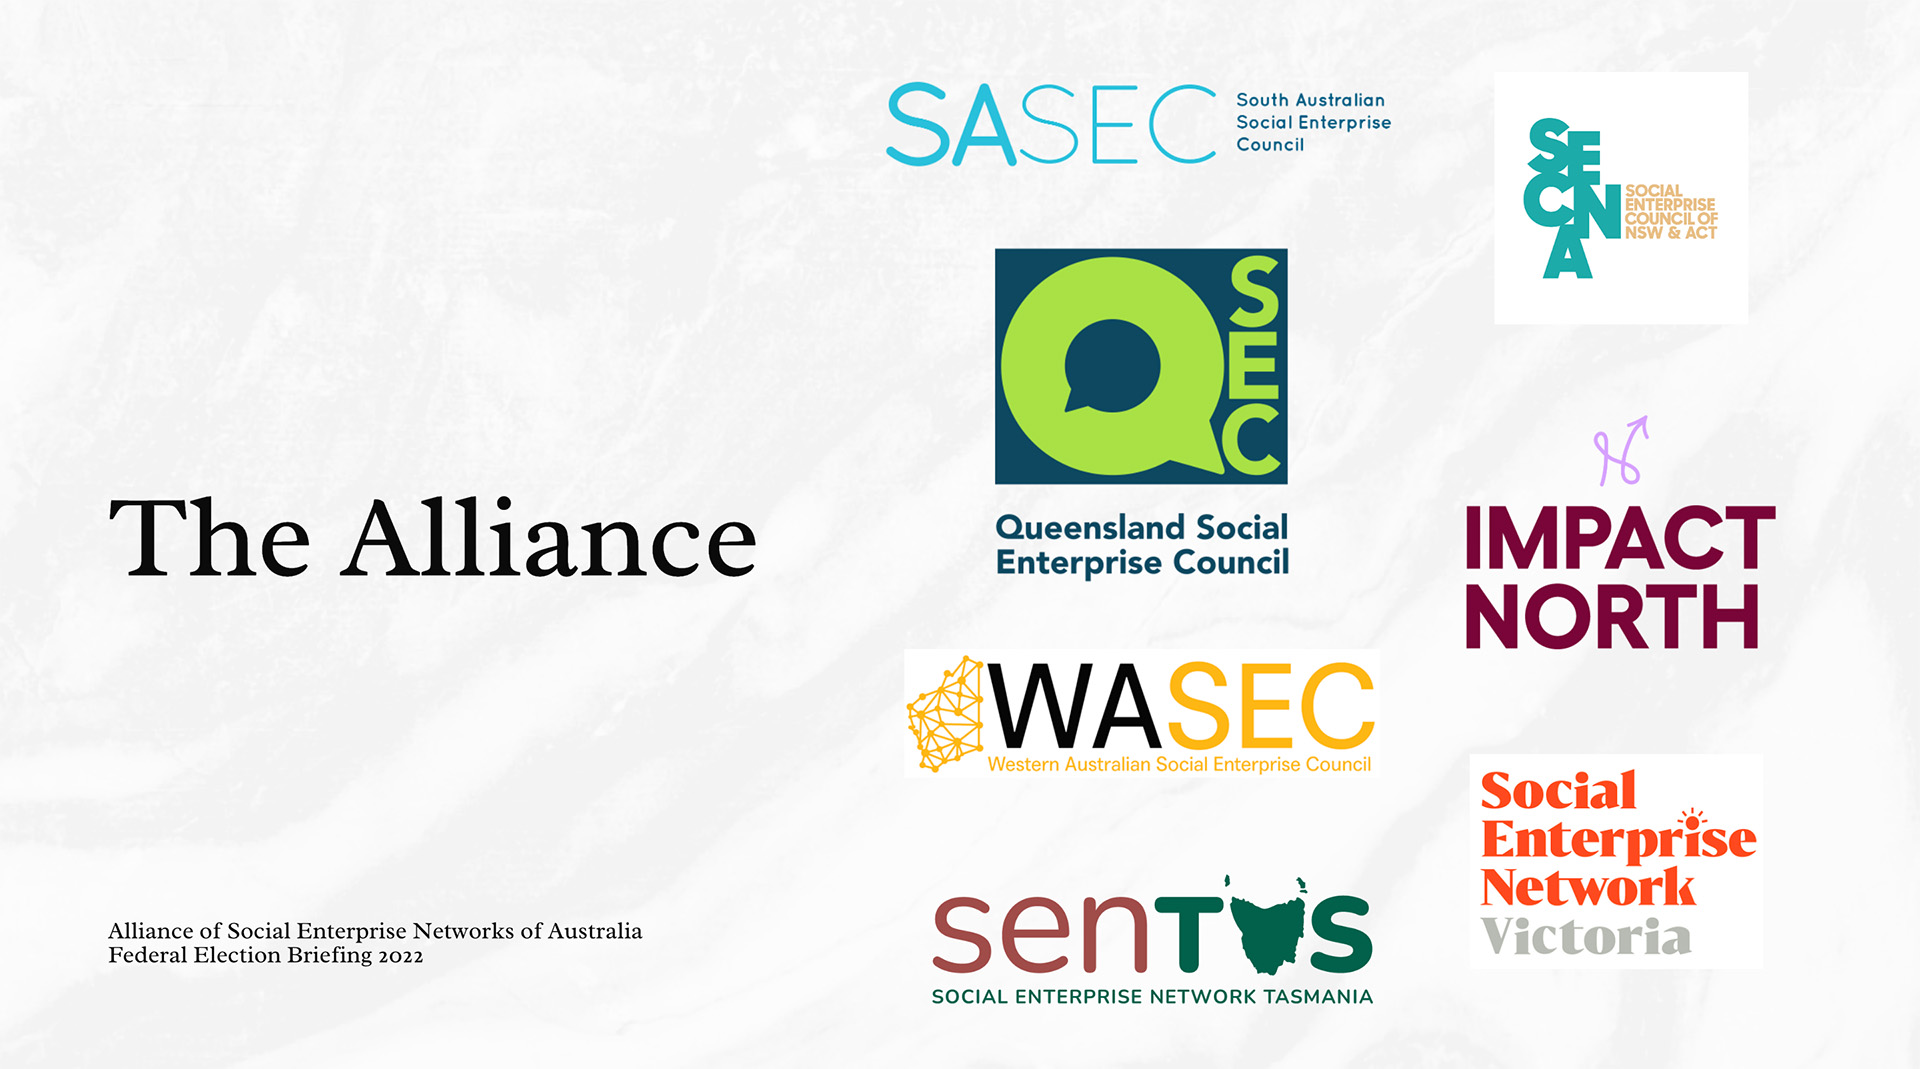 The Alliance of Social Enterprise Networks of Australia